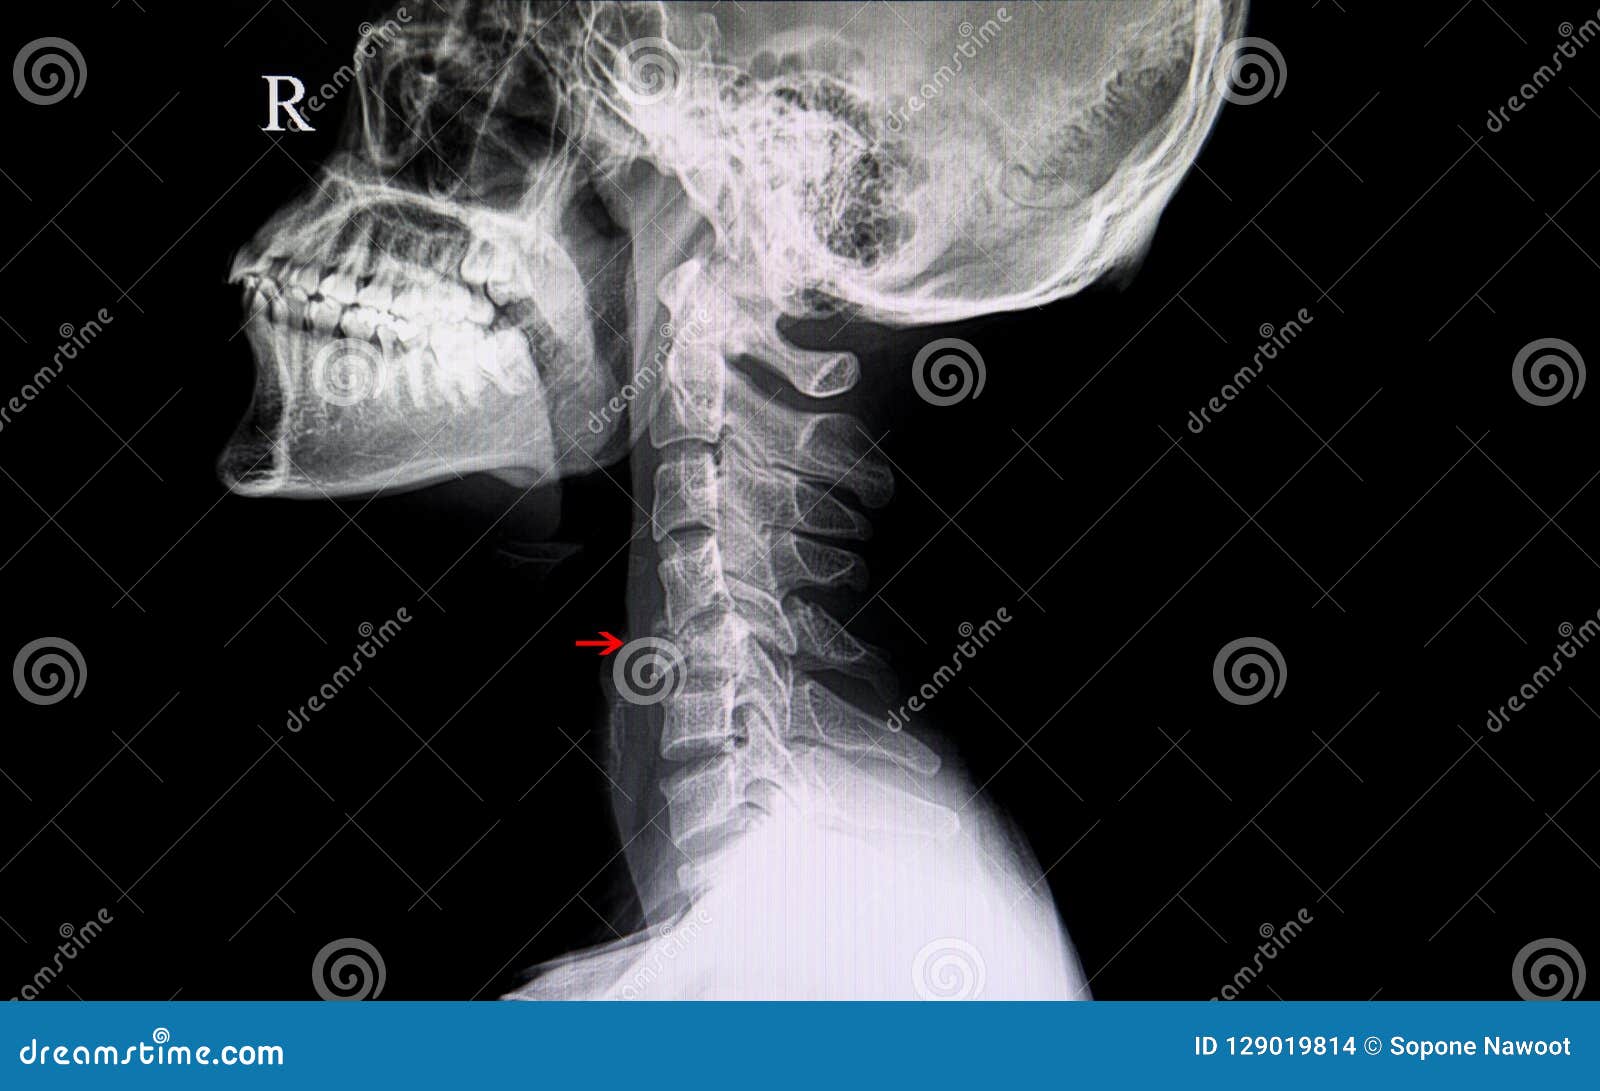 Трещина пациент. Перелом шейных позвонков. Перелом позвоночника рентген.